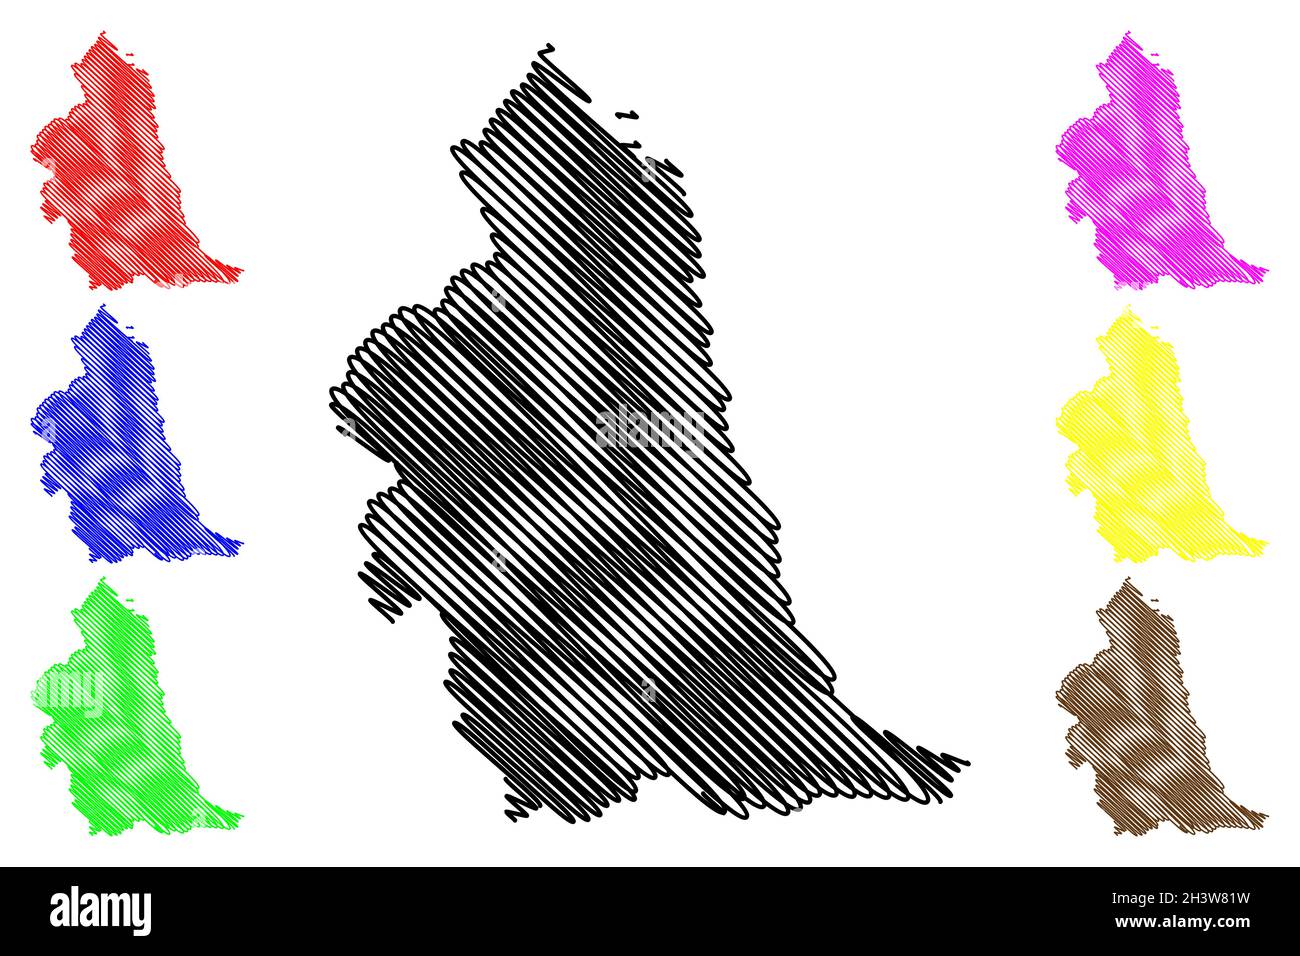 Région du nord-est de l'Angleterre (Royaume-Uni, région d'Angleterre) carte illustration vectorielle, croquis à tracer carte du nord-est de l'Angleterre Illustration de Vecteur